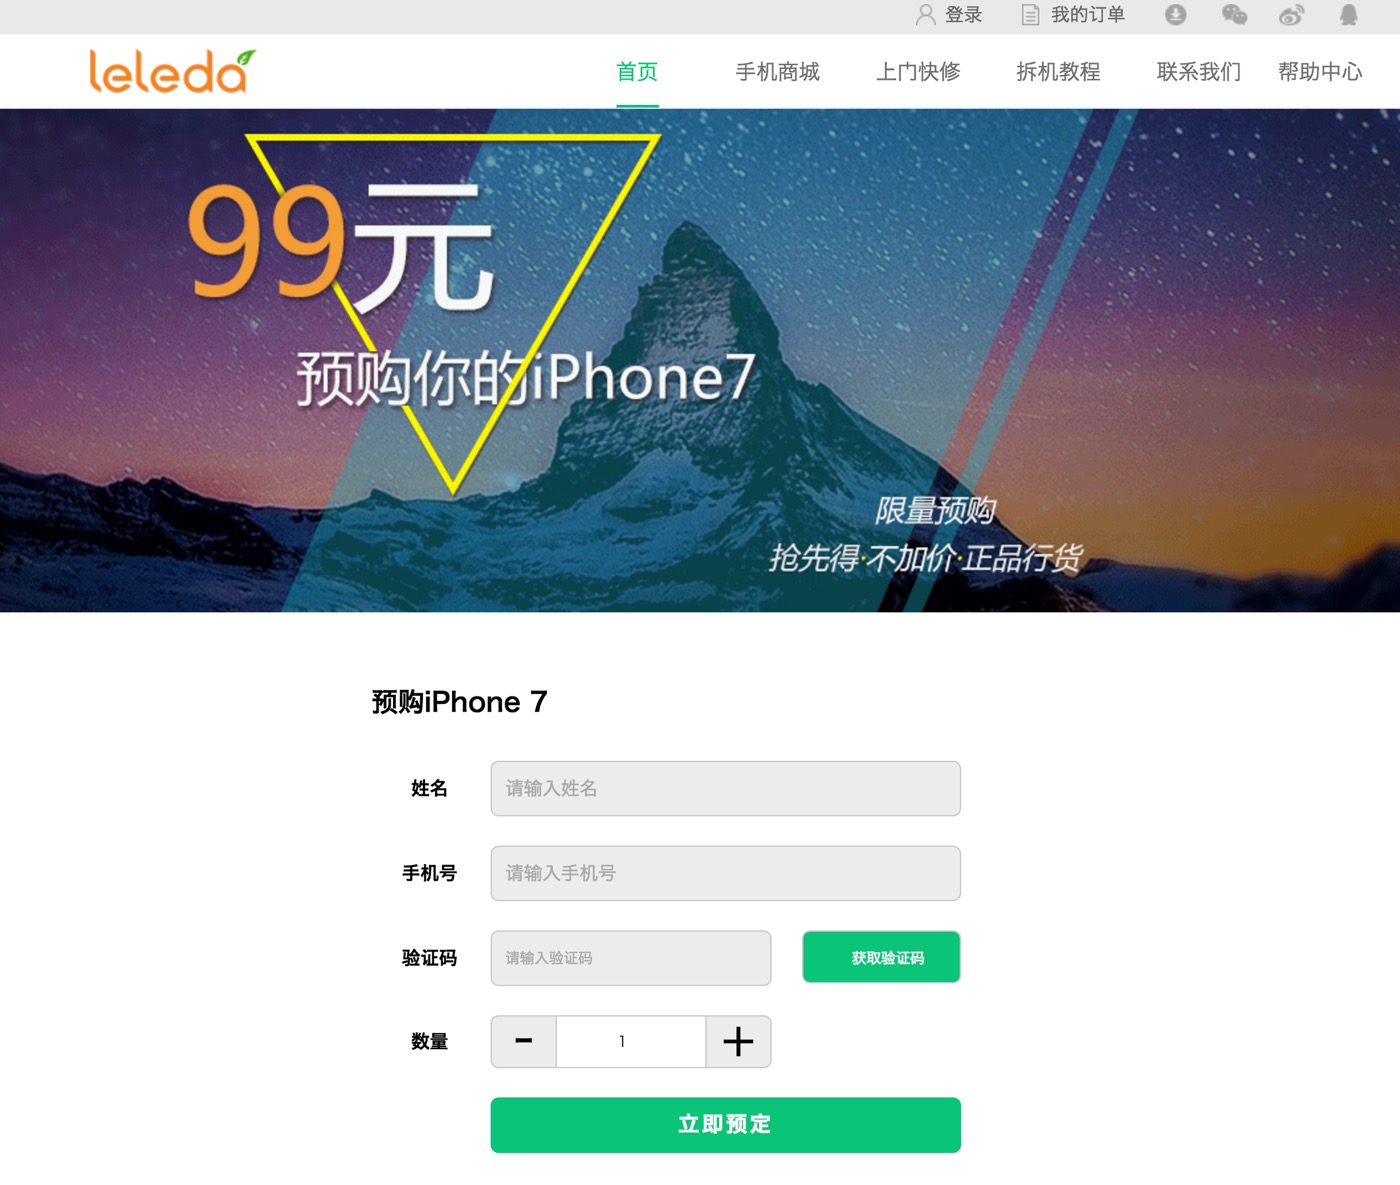 中国では早くも｢iPhone 7｣の予約受付が開始される